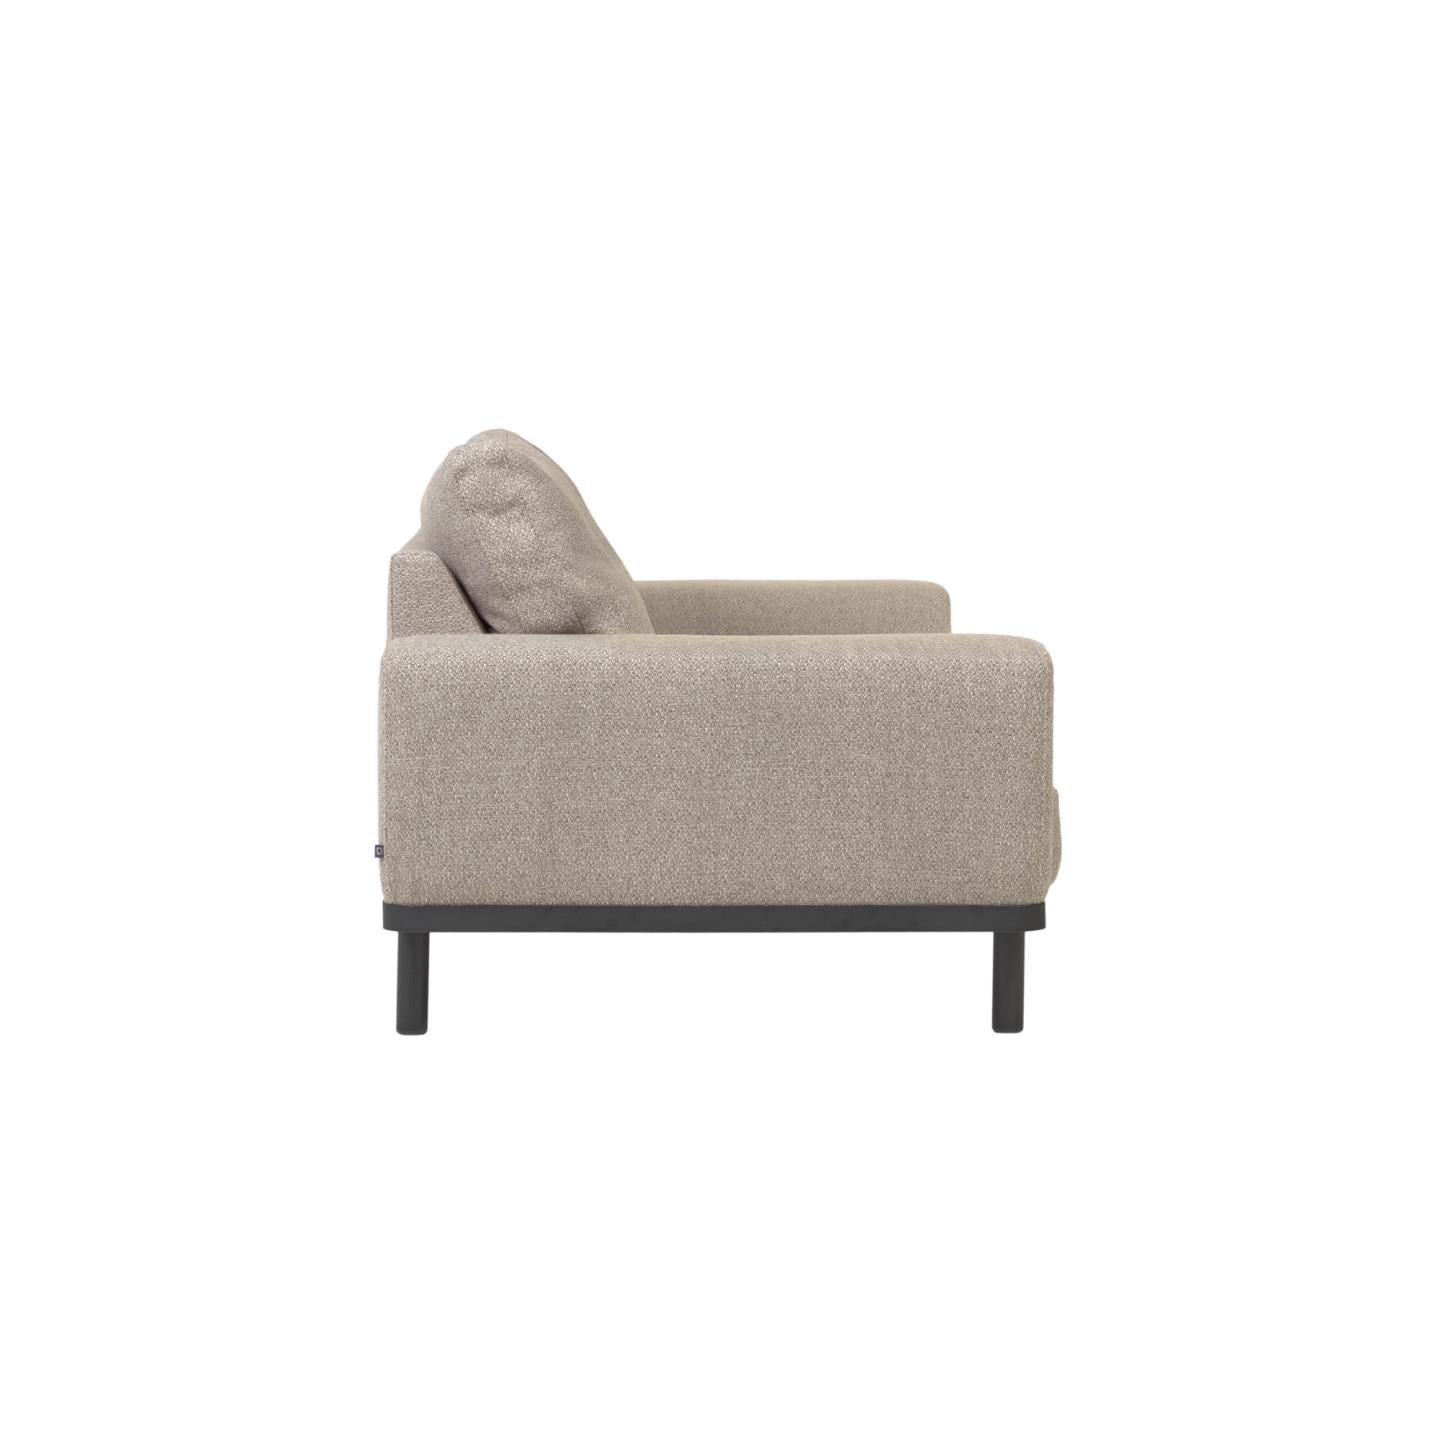 Noa 3 személyes kanapé bézs színben, sötét színű lábakkal, 230 cm